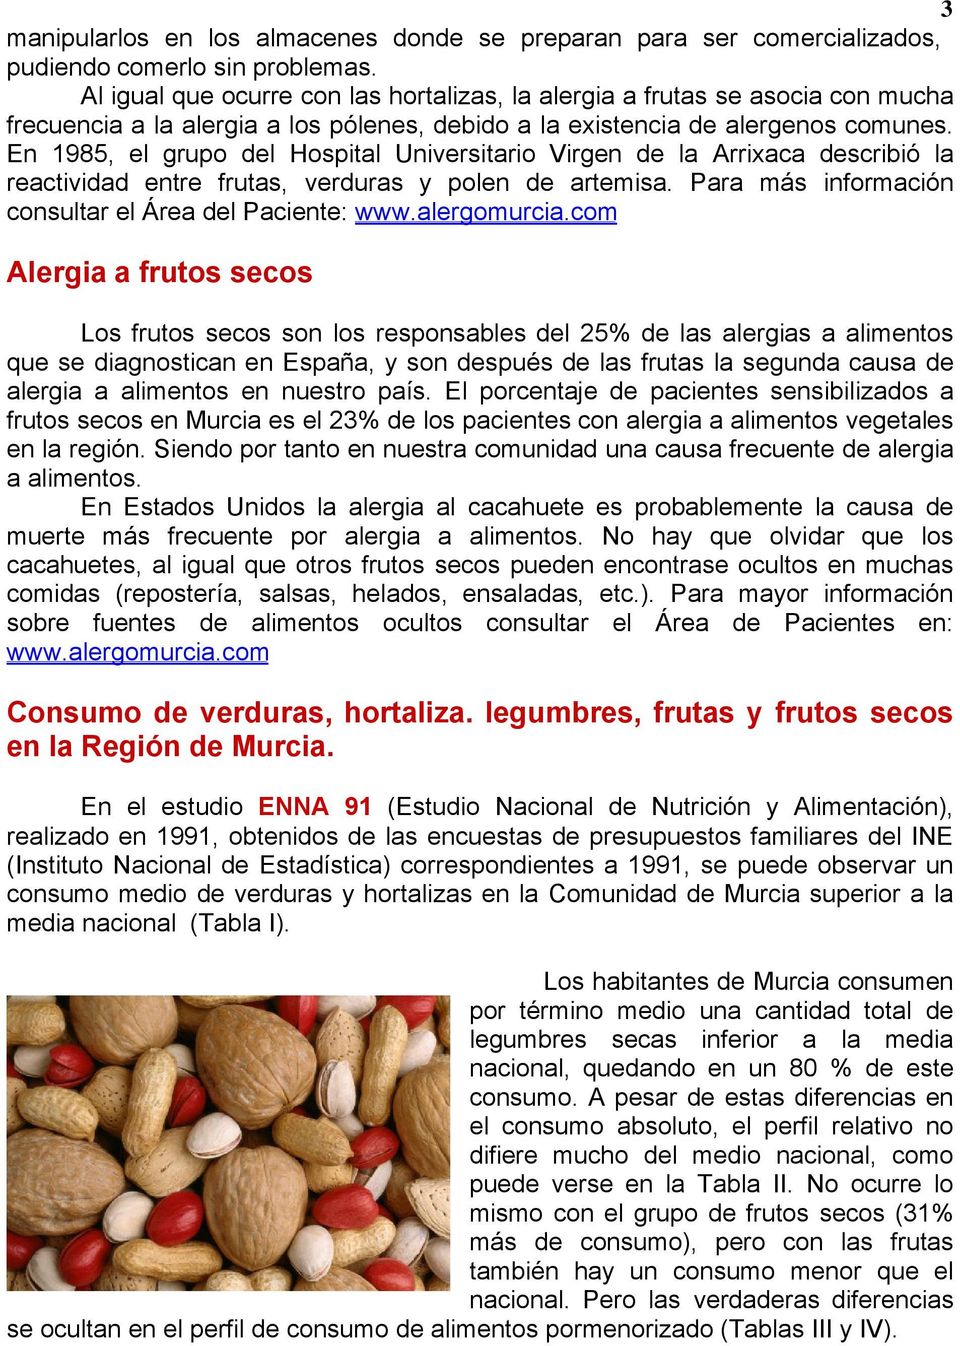 En 1985, el grupo del Hospital Universitario Virgen de la Arrixaca describió la reactividad entre frutas, verduras y polen de artemisa. Para más información consultar el Área del Paciente: www.